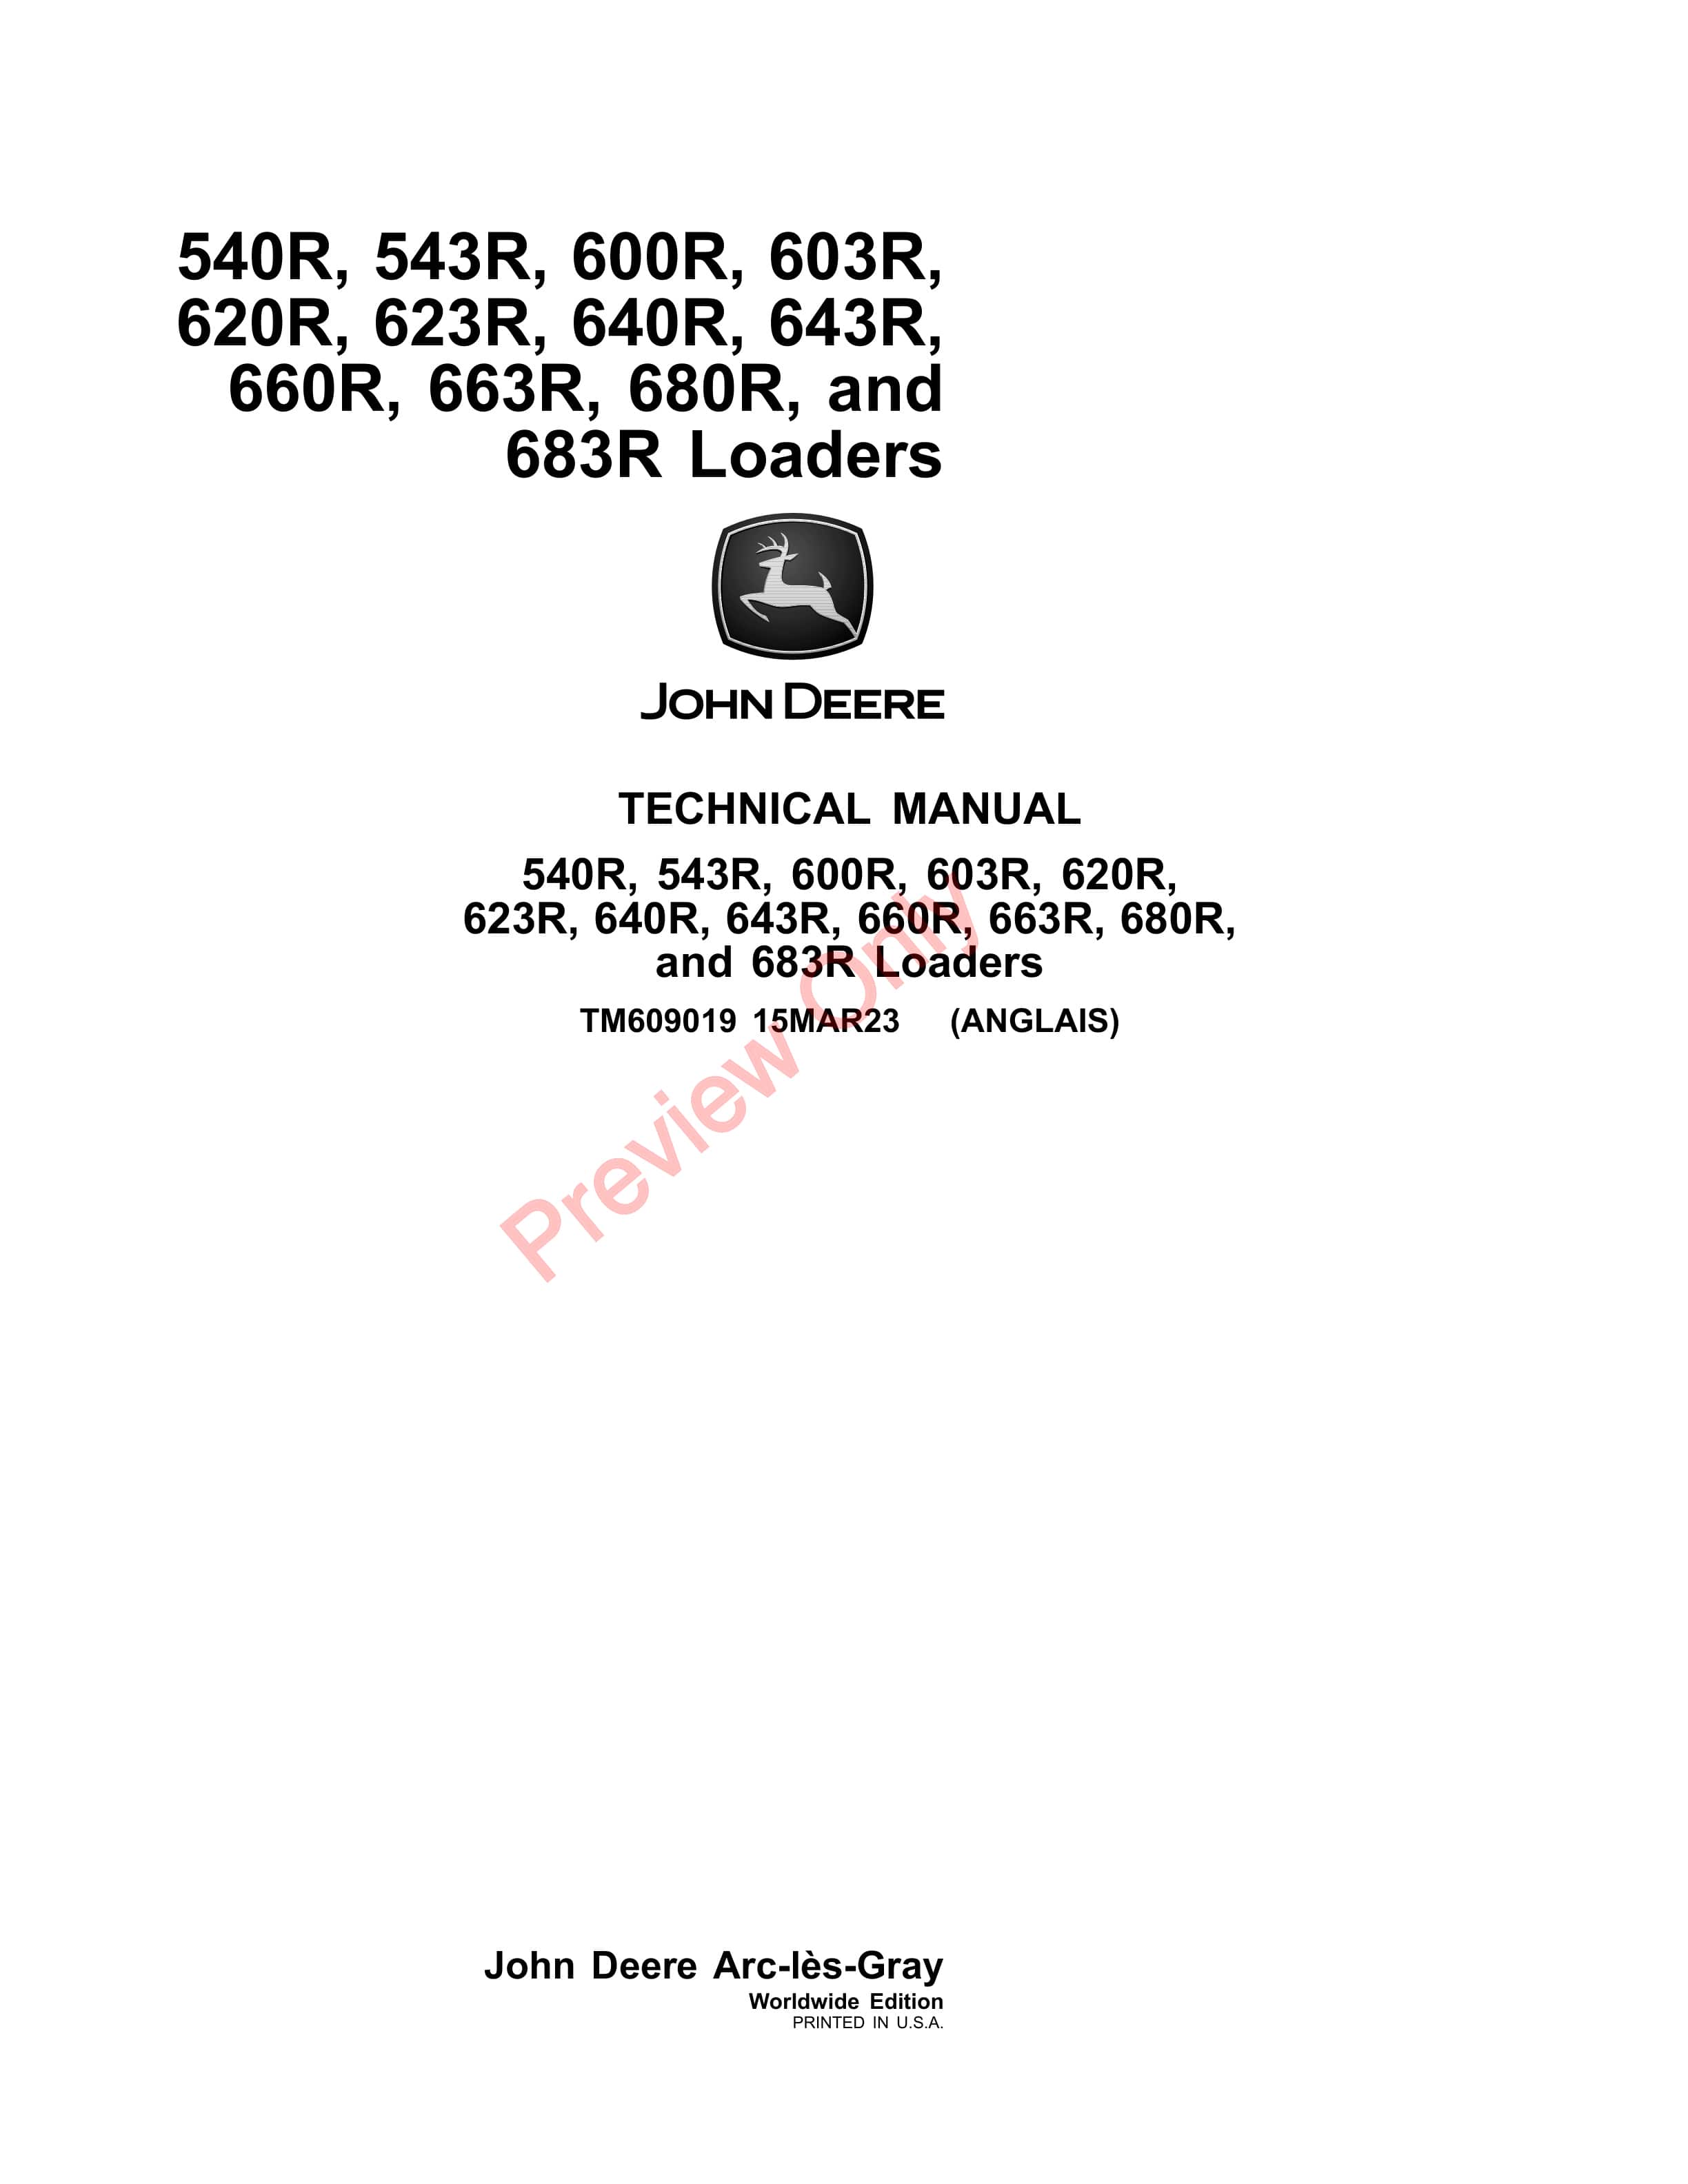 John Deere 540R, 543R, 603R, 620R, 623R, 640R, 643R, 660R, 663R, 680R and 683R Loaders Technical Manual TM609019 15MAR23-1